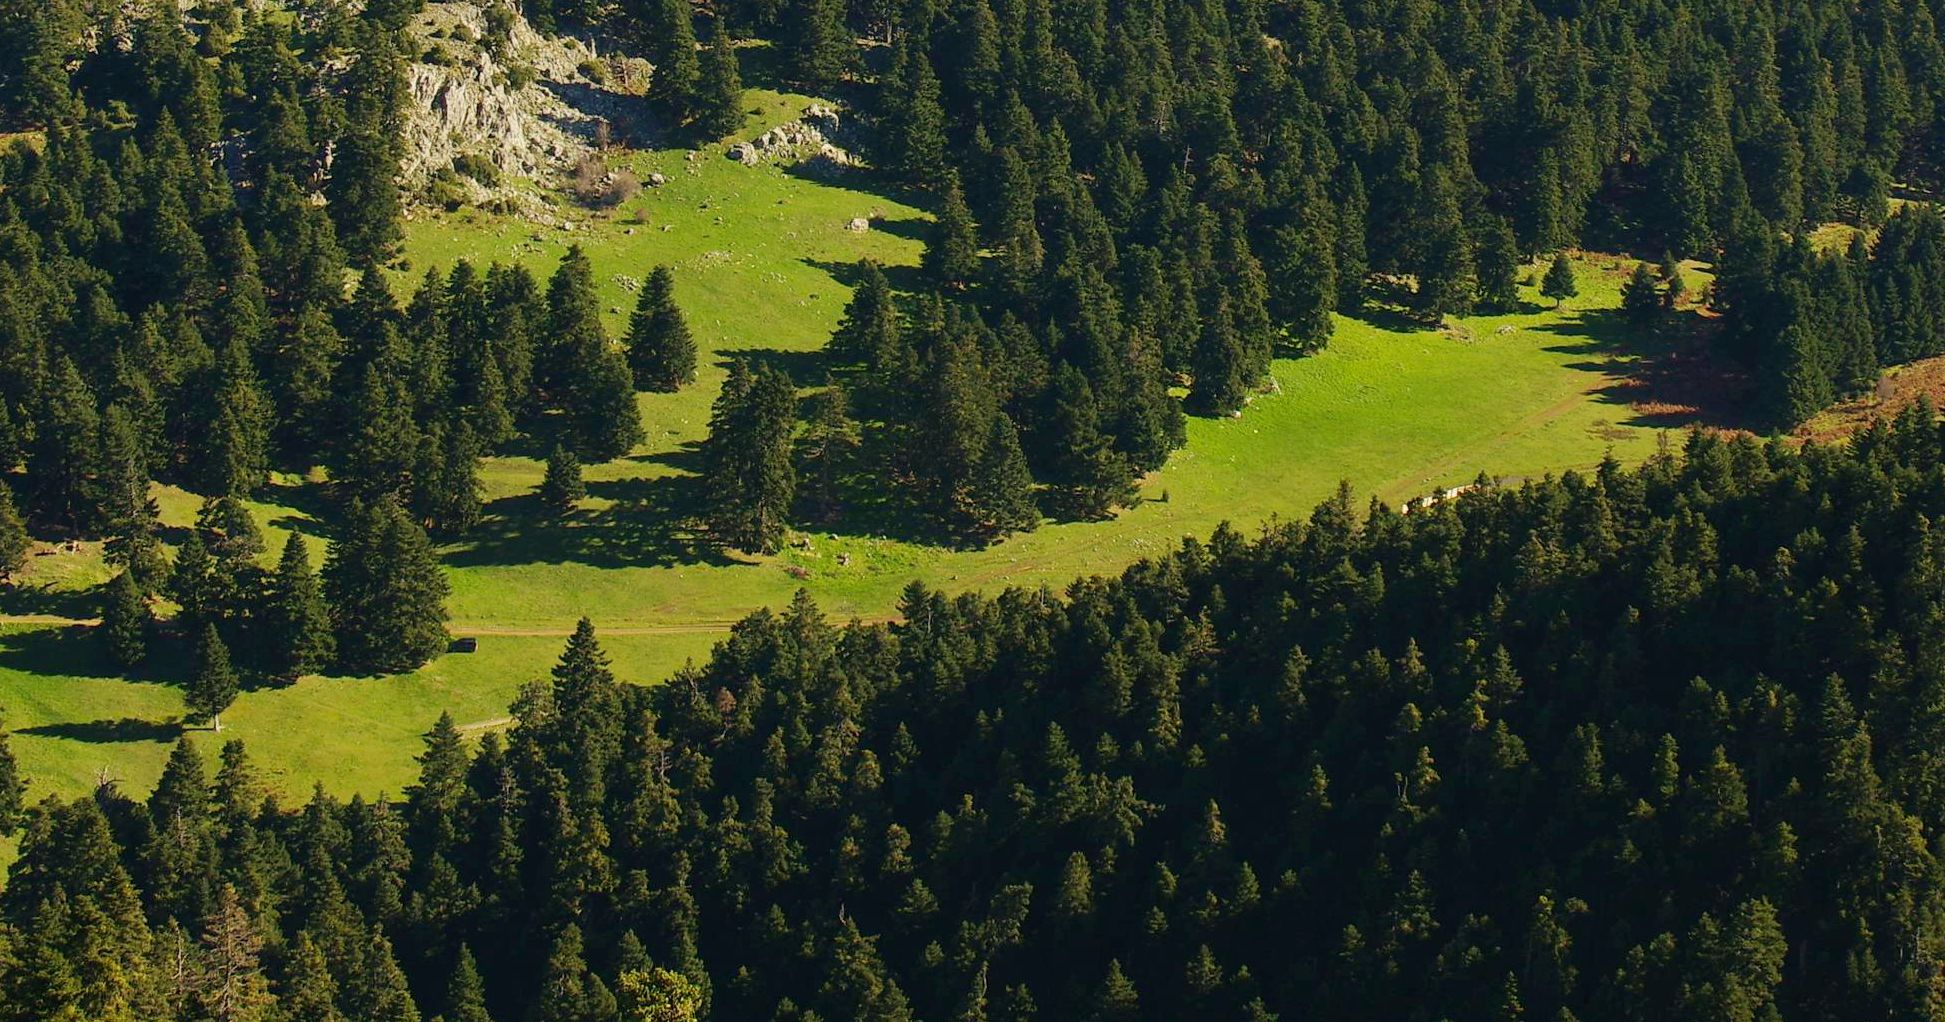 Το Κεφαλονίτικο Έλατο: Το μεγαλύτερο μέρος της ζώνης του ορεινού δάσους της Νότιας και Κεντρικής Ελλάδας καλύπτεται από δάση Κεφαληνιακής ελάτης